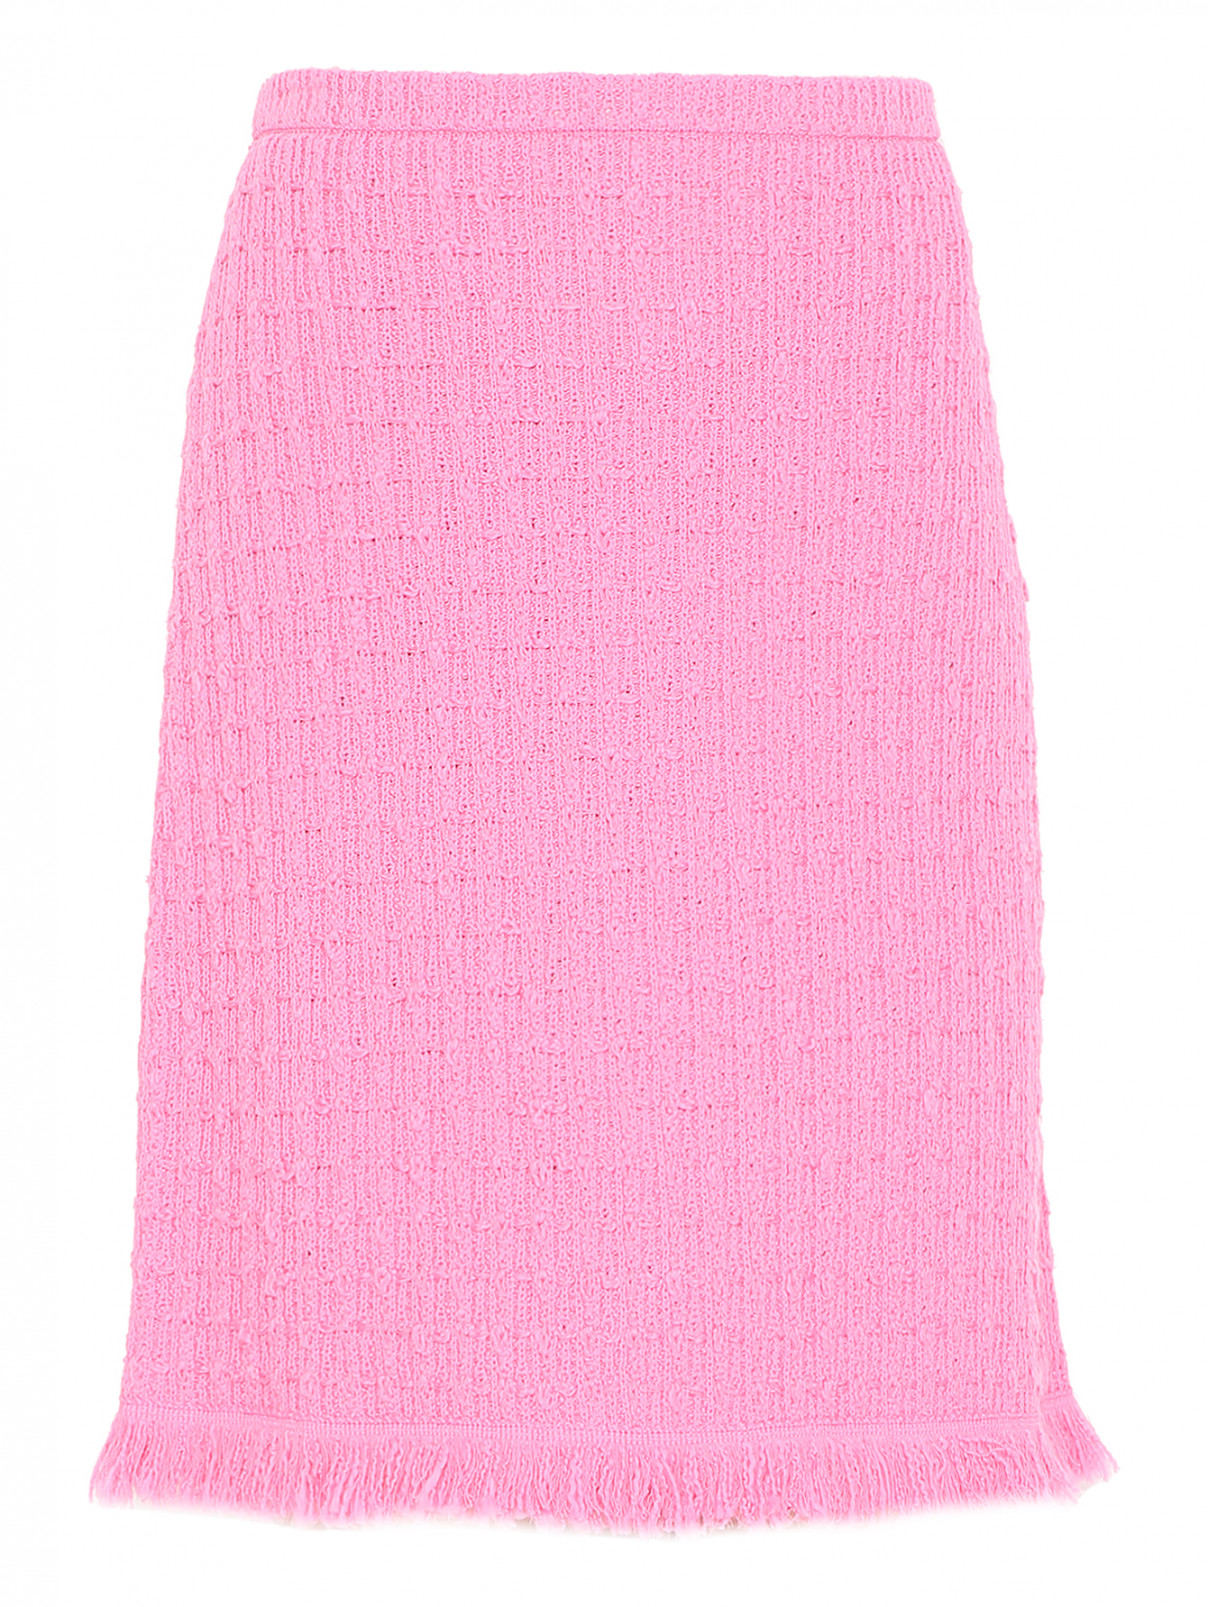 Трикотажная юбка с бахромой Luisa Spagnoli  –  Общий вид  – Цвет:  Розовый